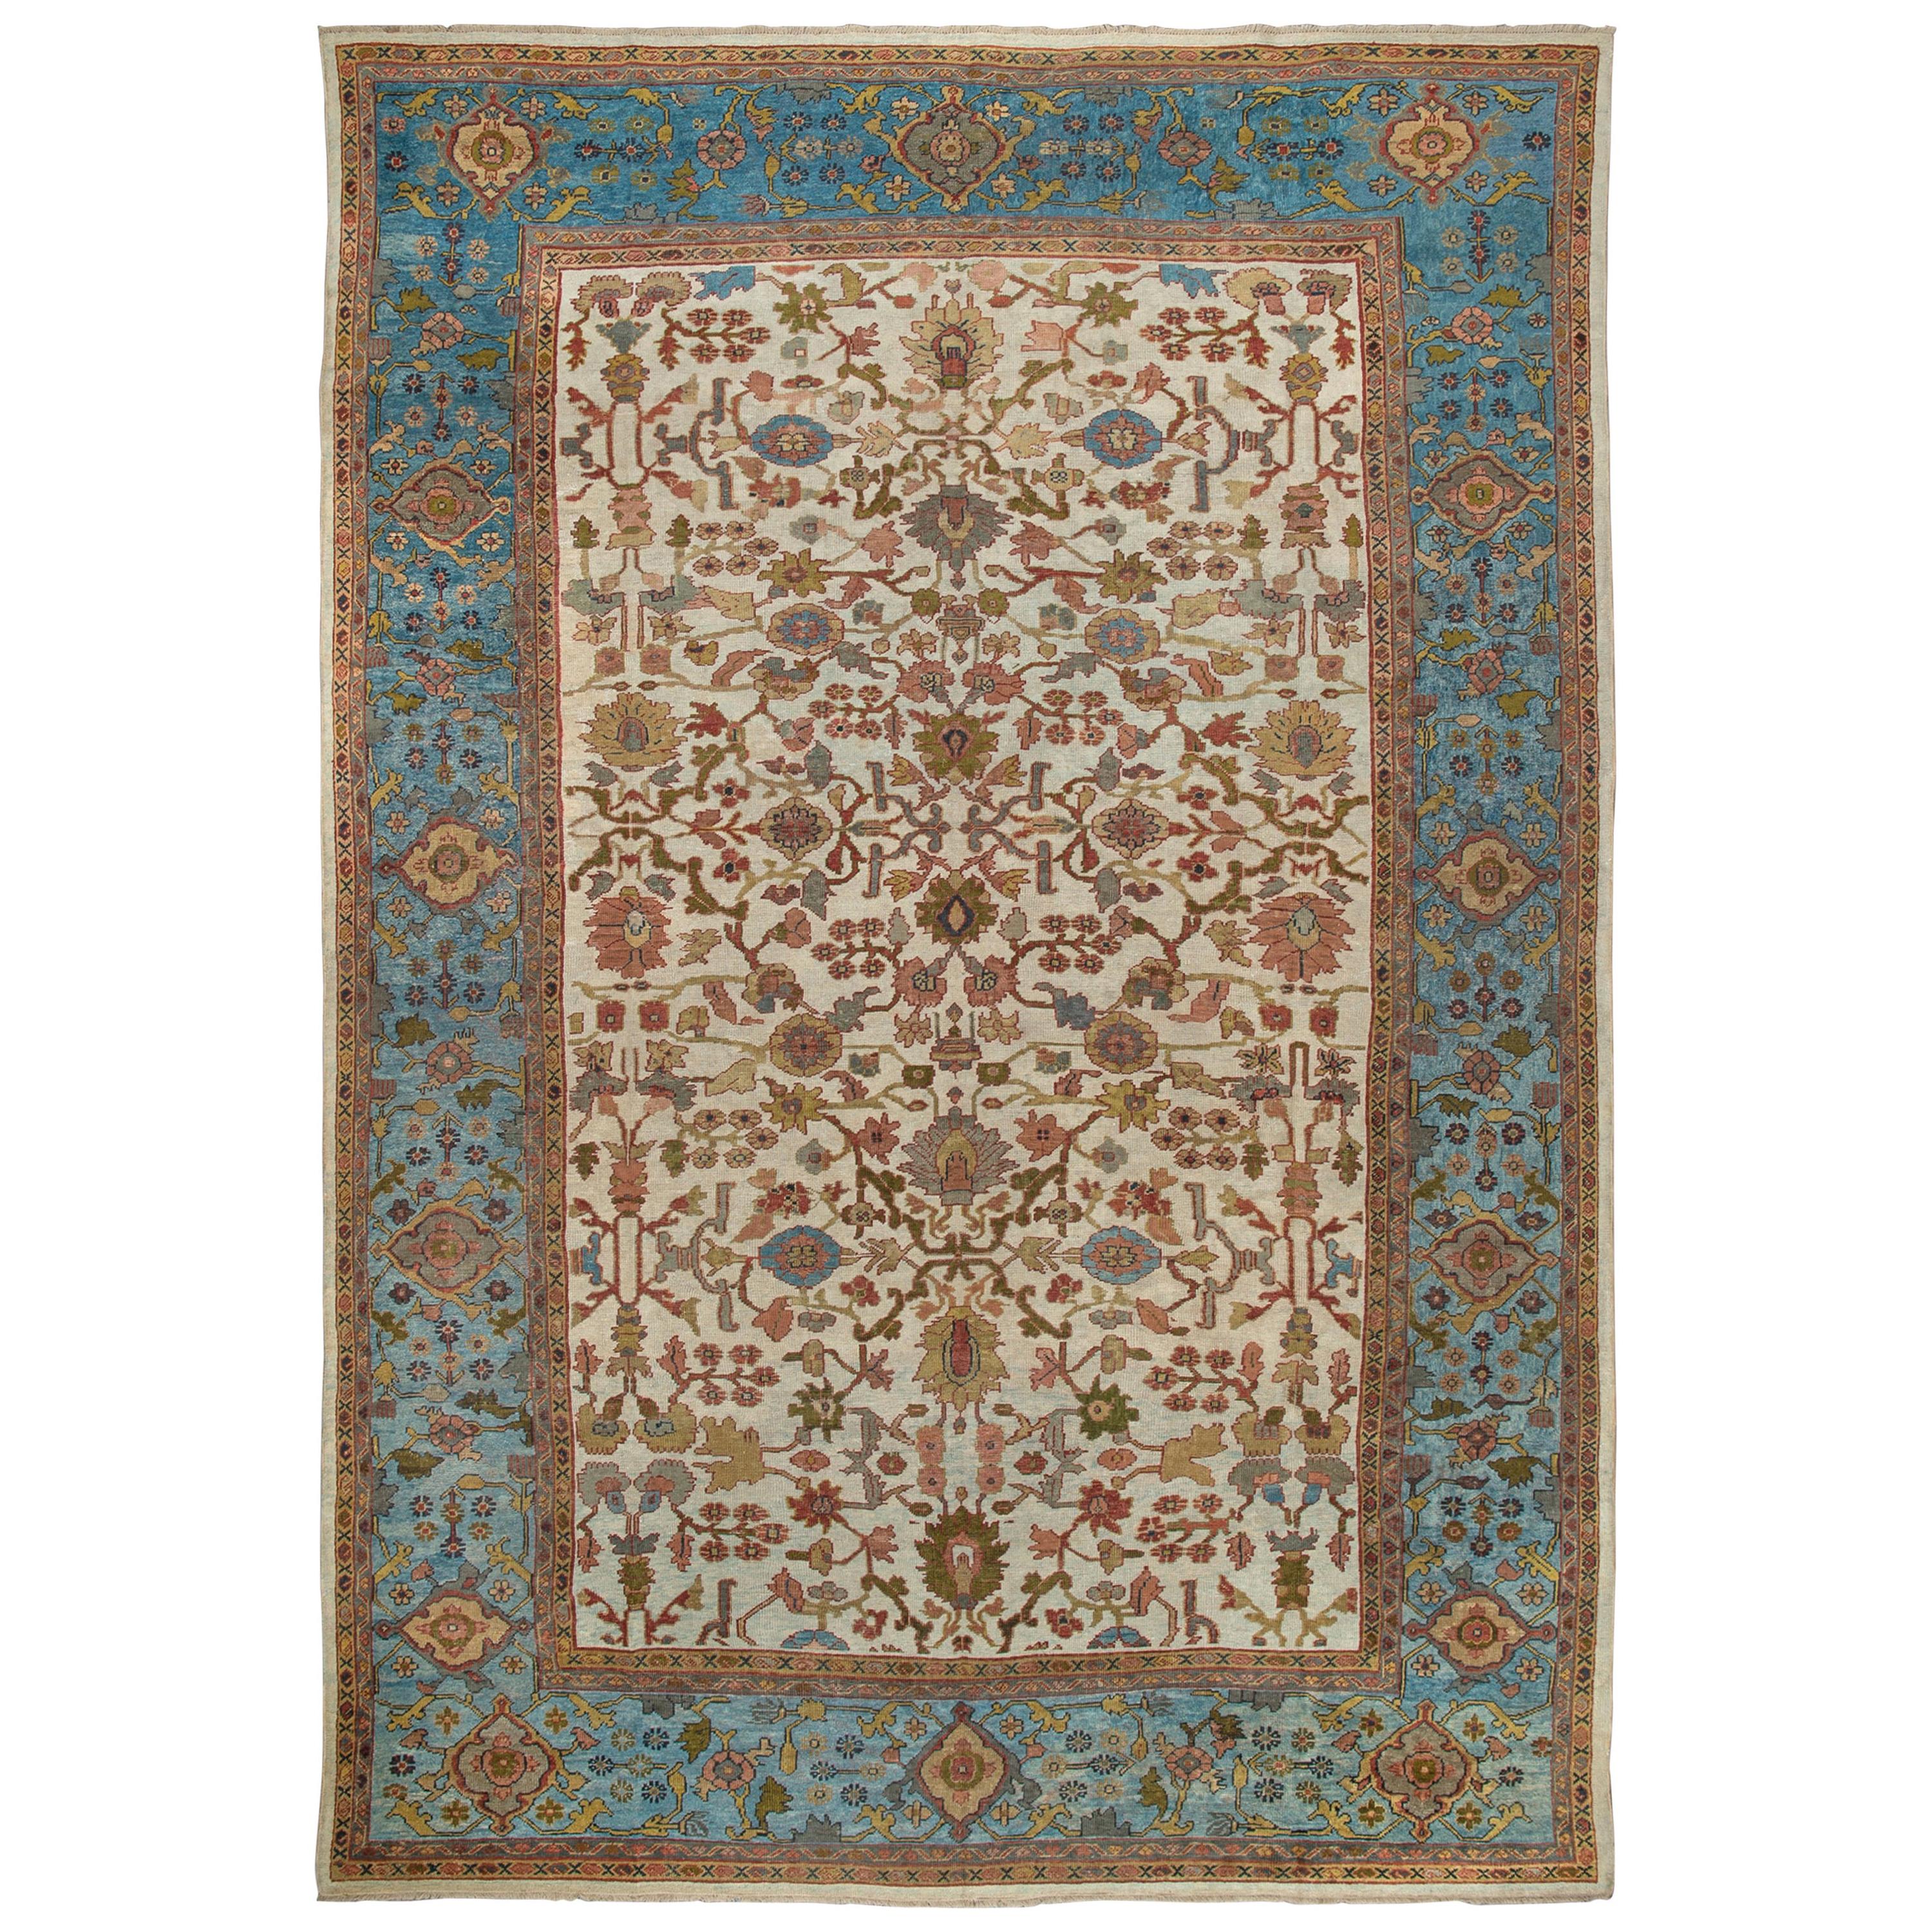 Schöner elfenbeinfarbener und himmelblauer antiker persischer Mahal-Teppich